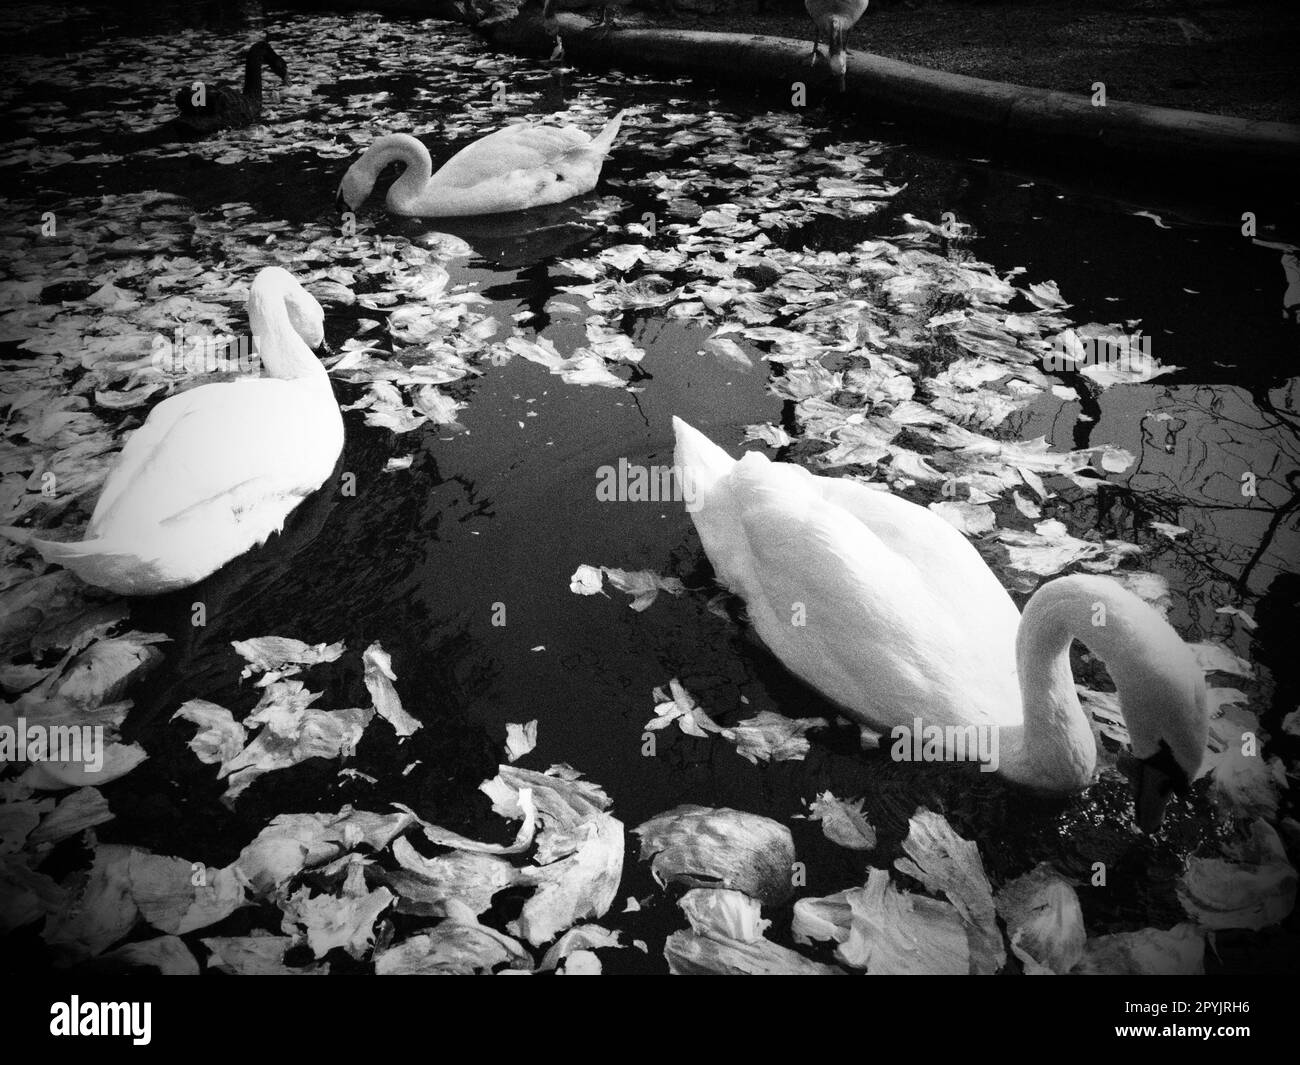 Weißer Schwan im Wasser. Weiße Schwänen in einem Teich, die Kohl und grünen Salat essen. Vögel im Zoo. Stockfoto